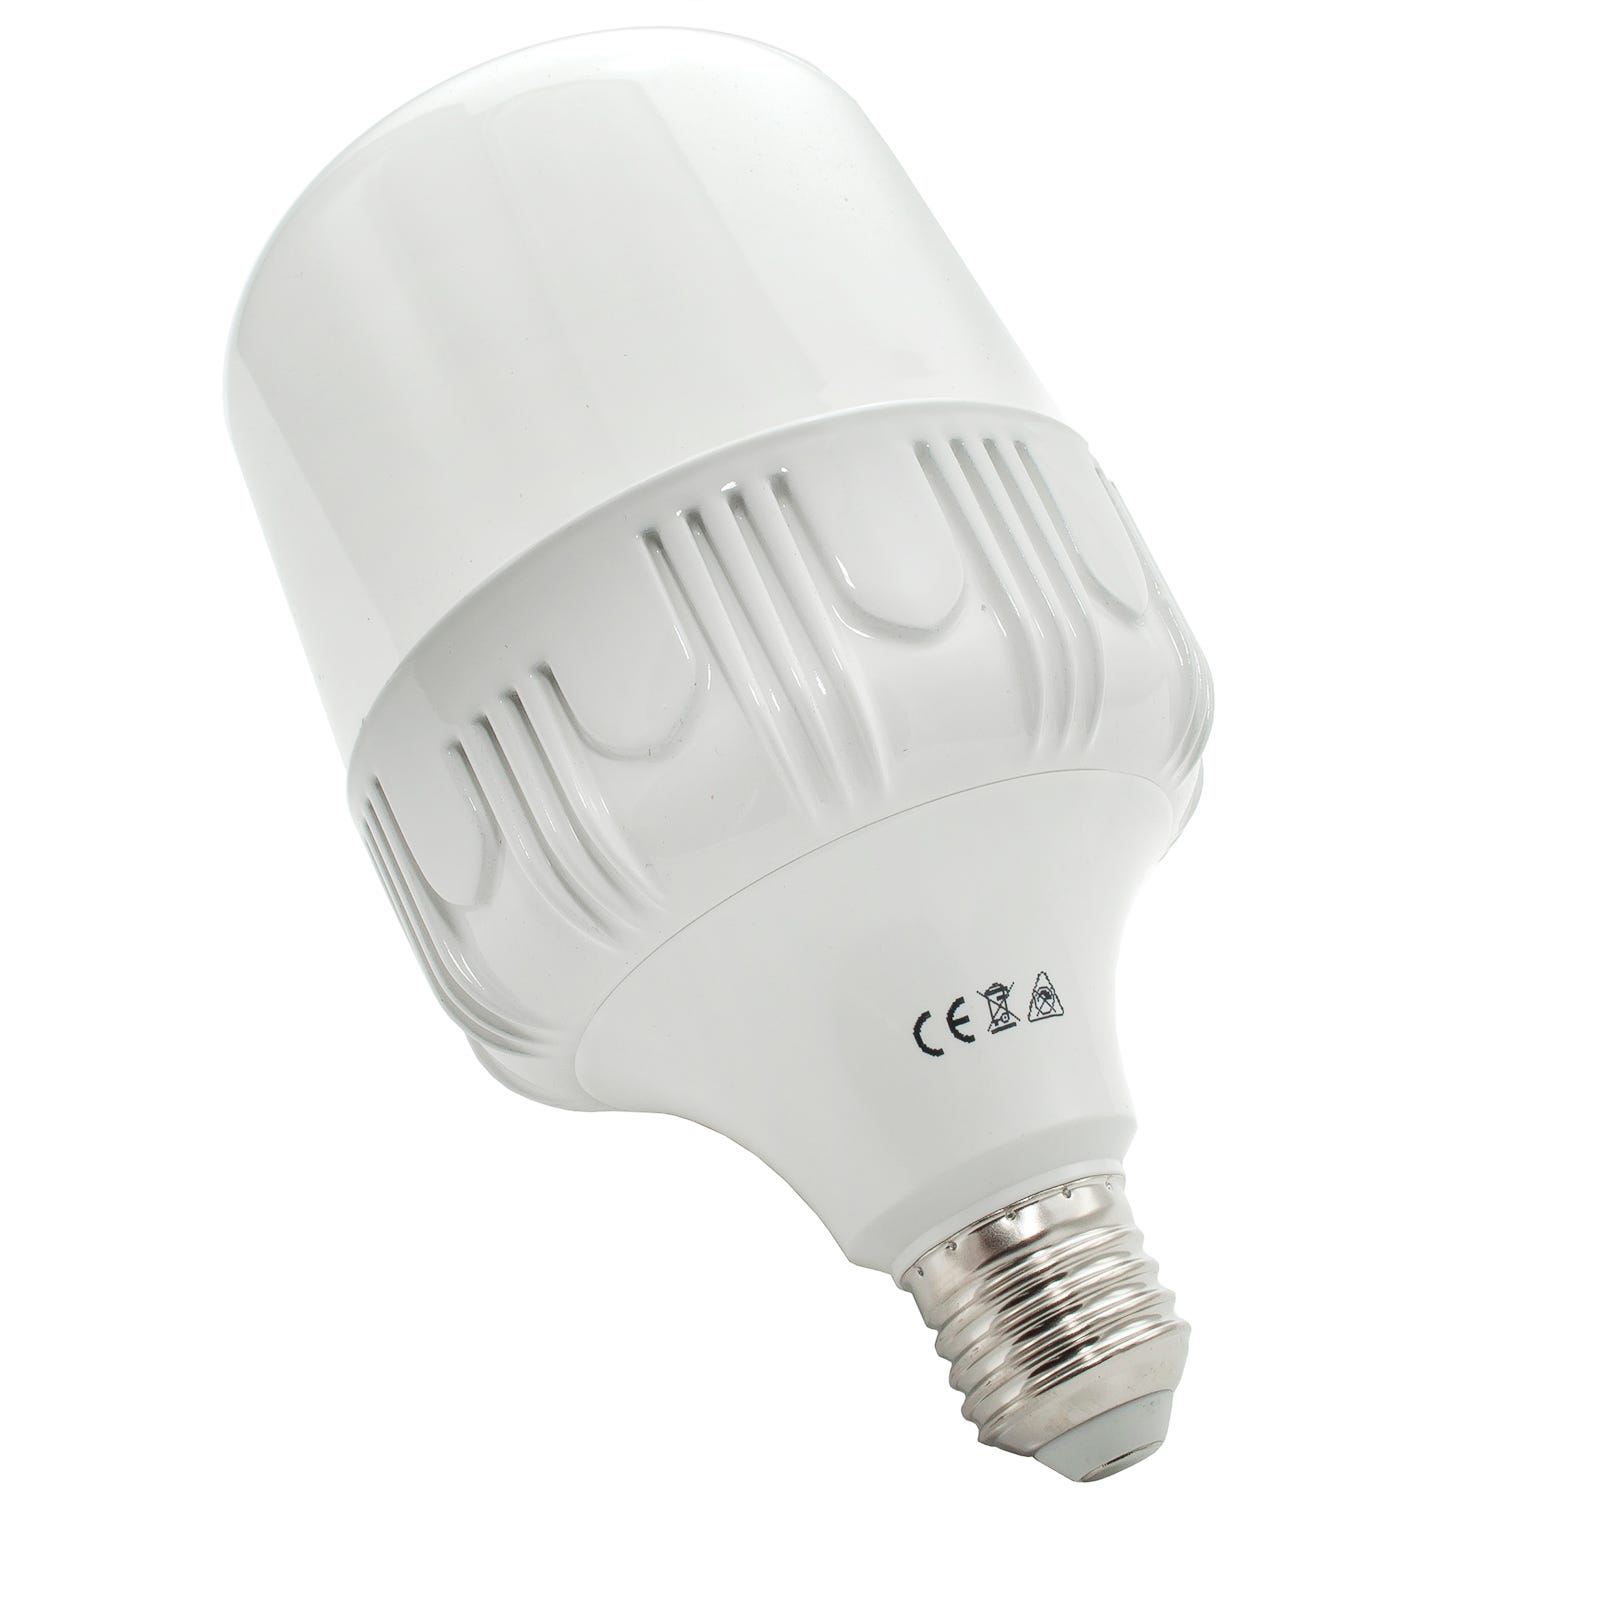 Lampada led E27 30W resa 200w 2700lm illuminazione grandi ambienti